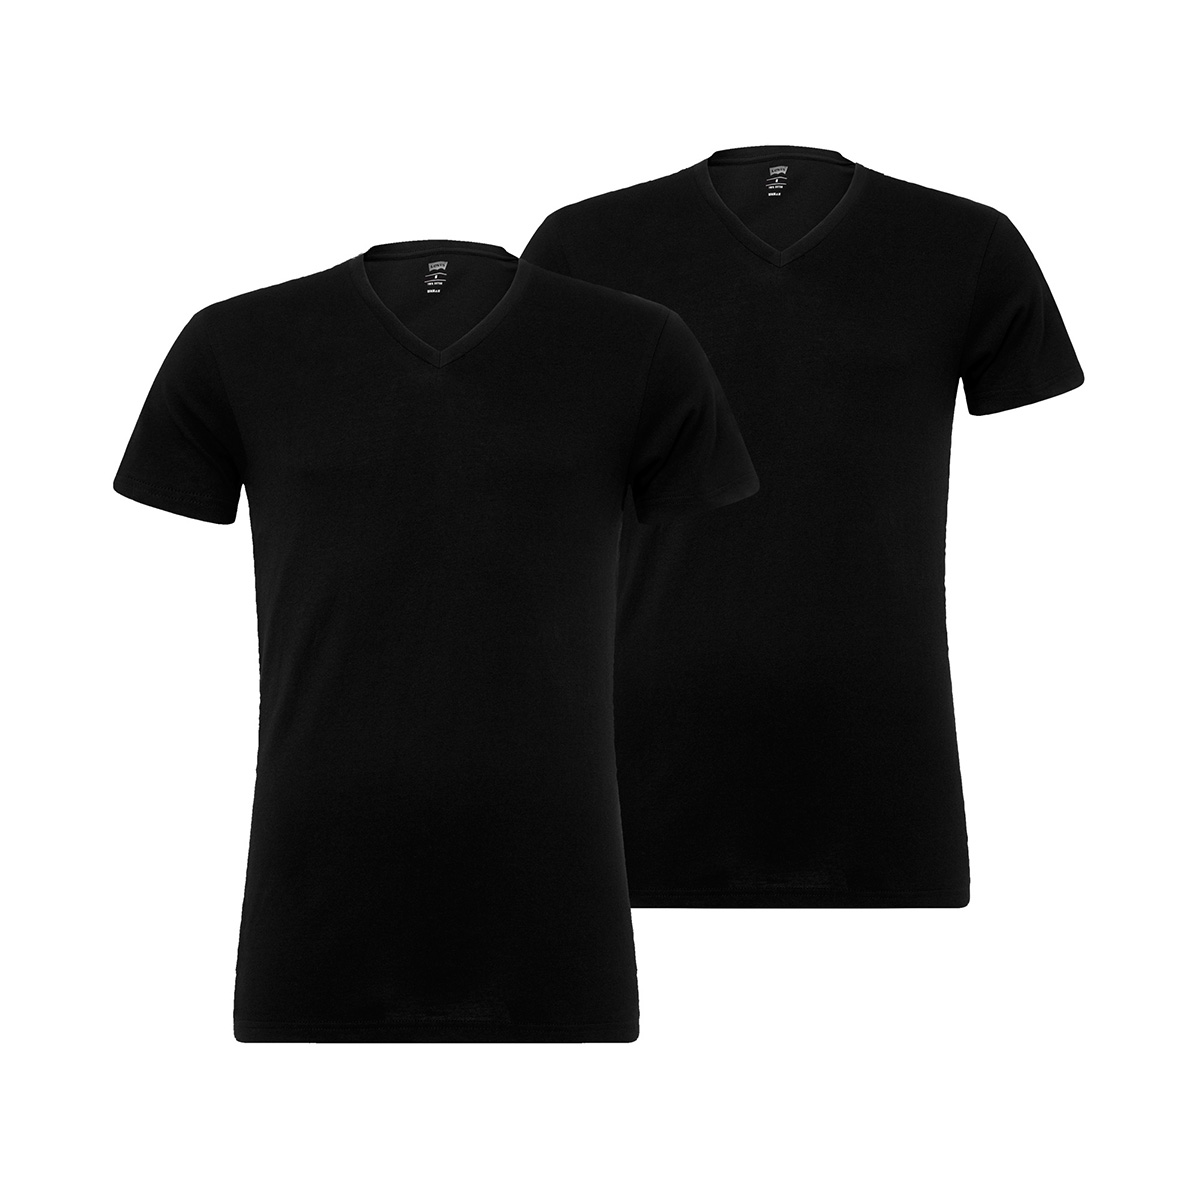 2 er Pack Levis 200SF V-Neck T-Shirt Men Herren Unterhemd V-Ausschnitt L, 884 - jet black von Levi's